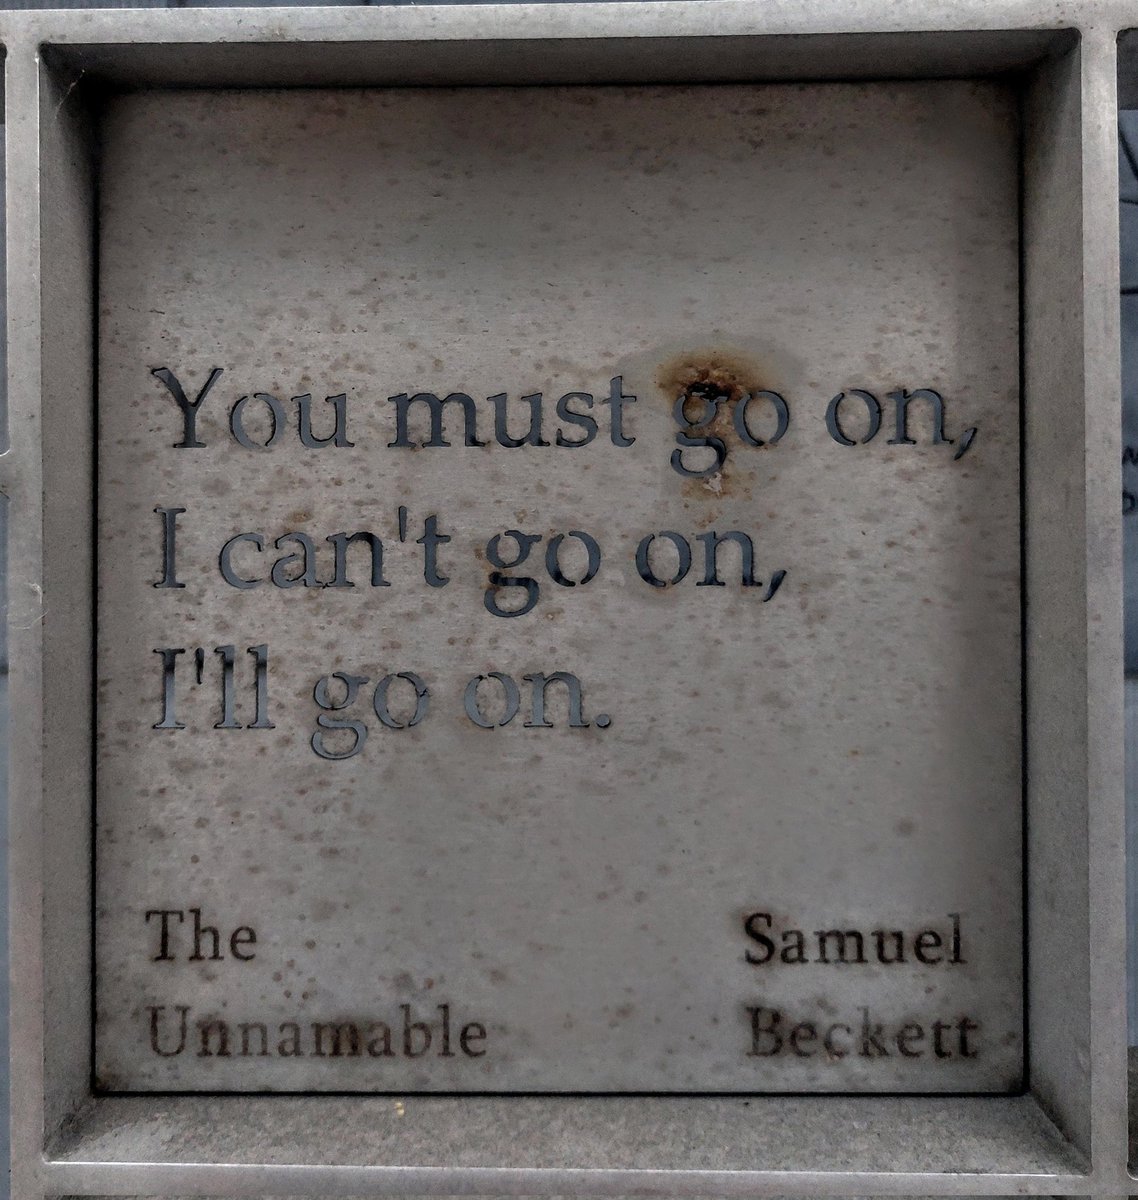 The Liberties. Dublin 8. The Unnamable. Beckett. #irishwriters #urbanrunners #innercityrunning #samuelbeckett❤️🇪🇺🇮🇪🏃‍♀️🐕